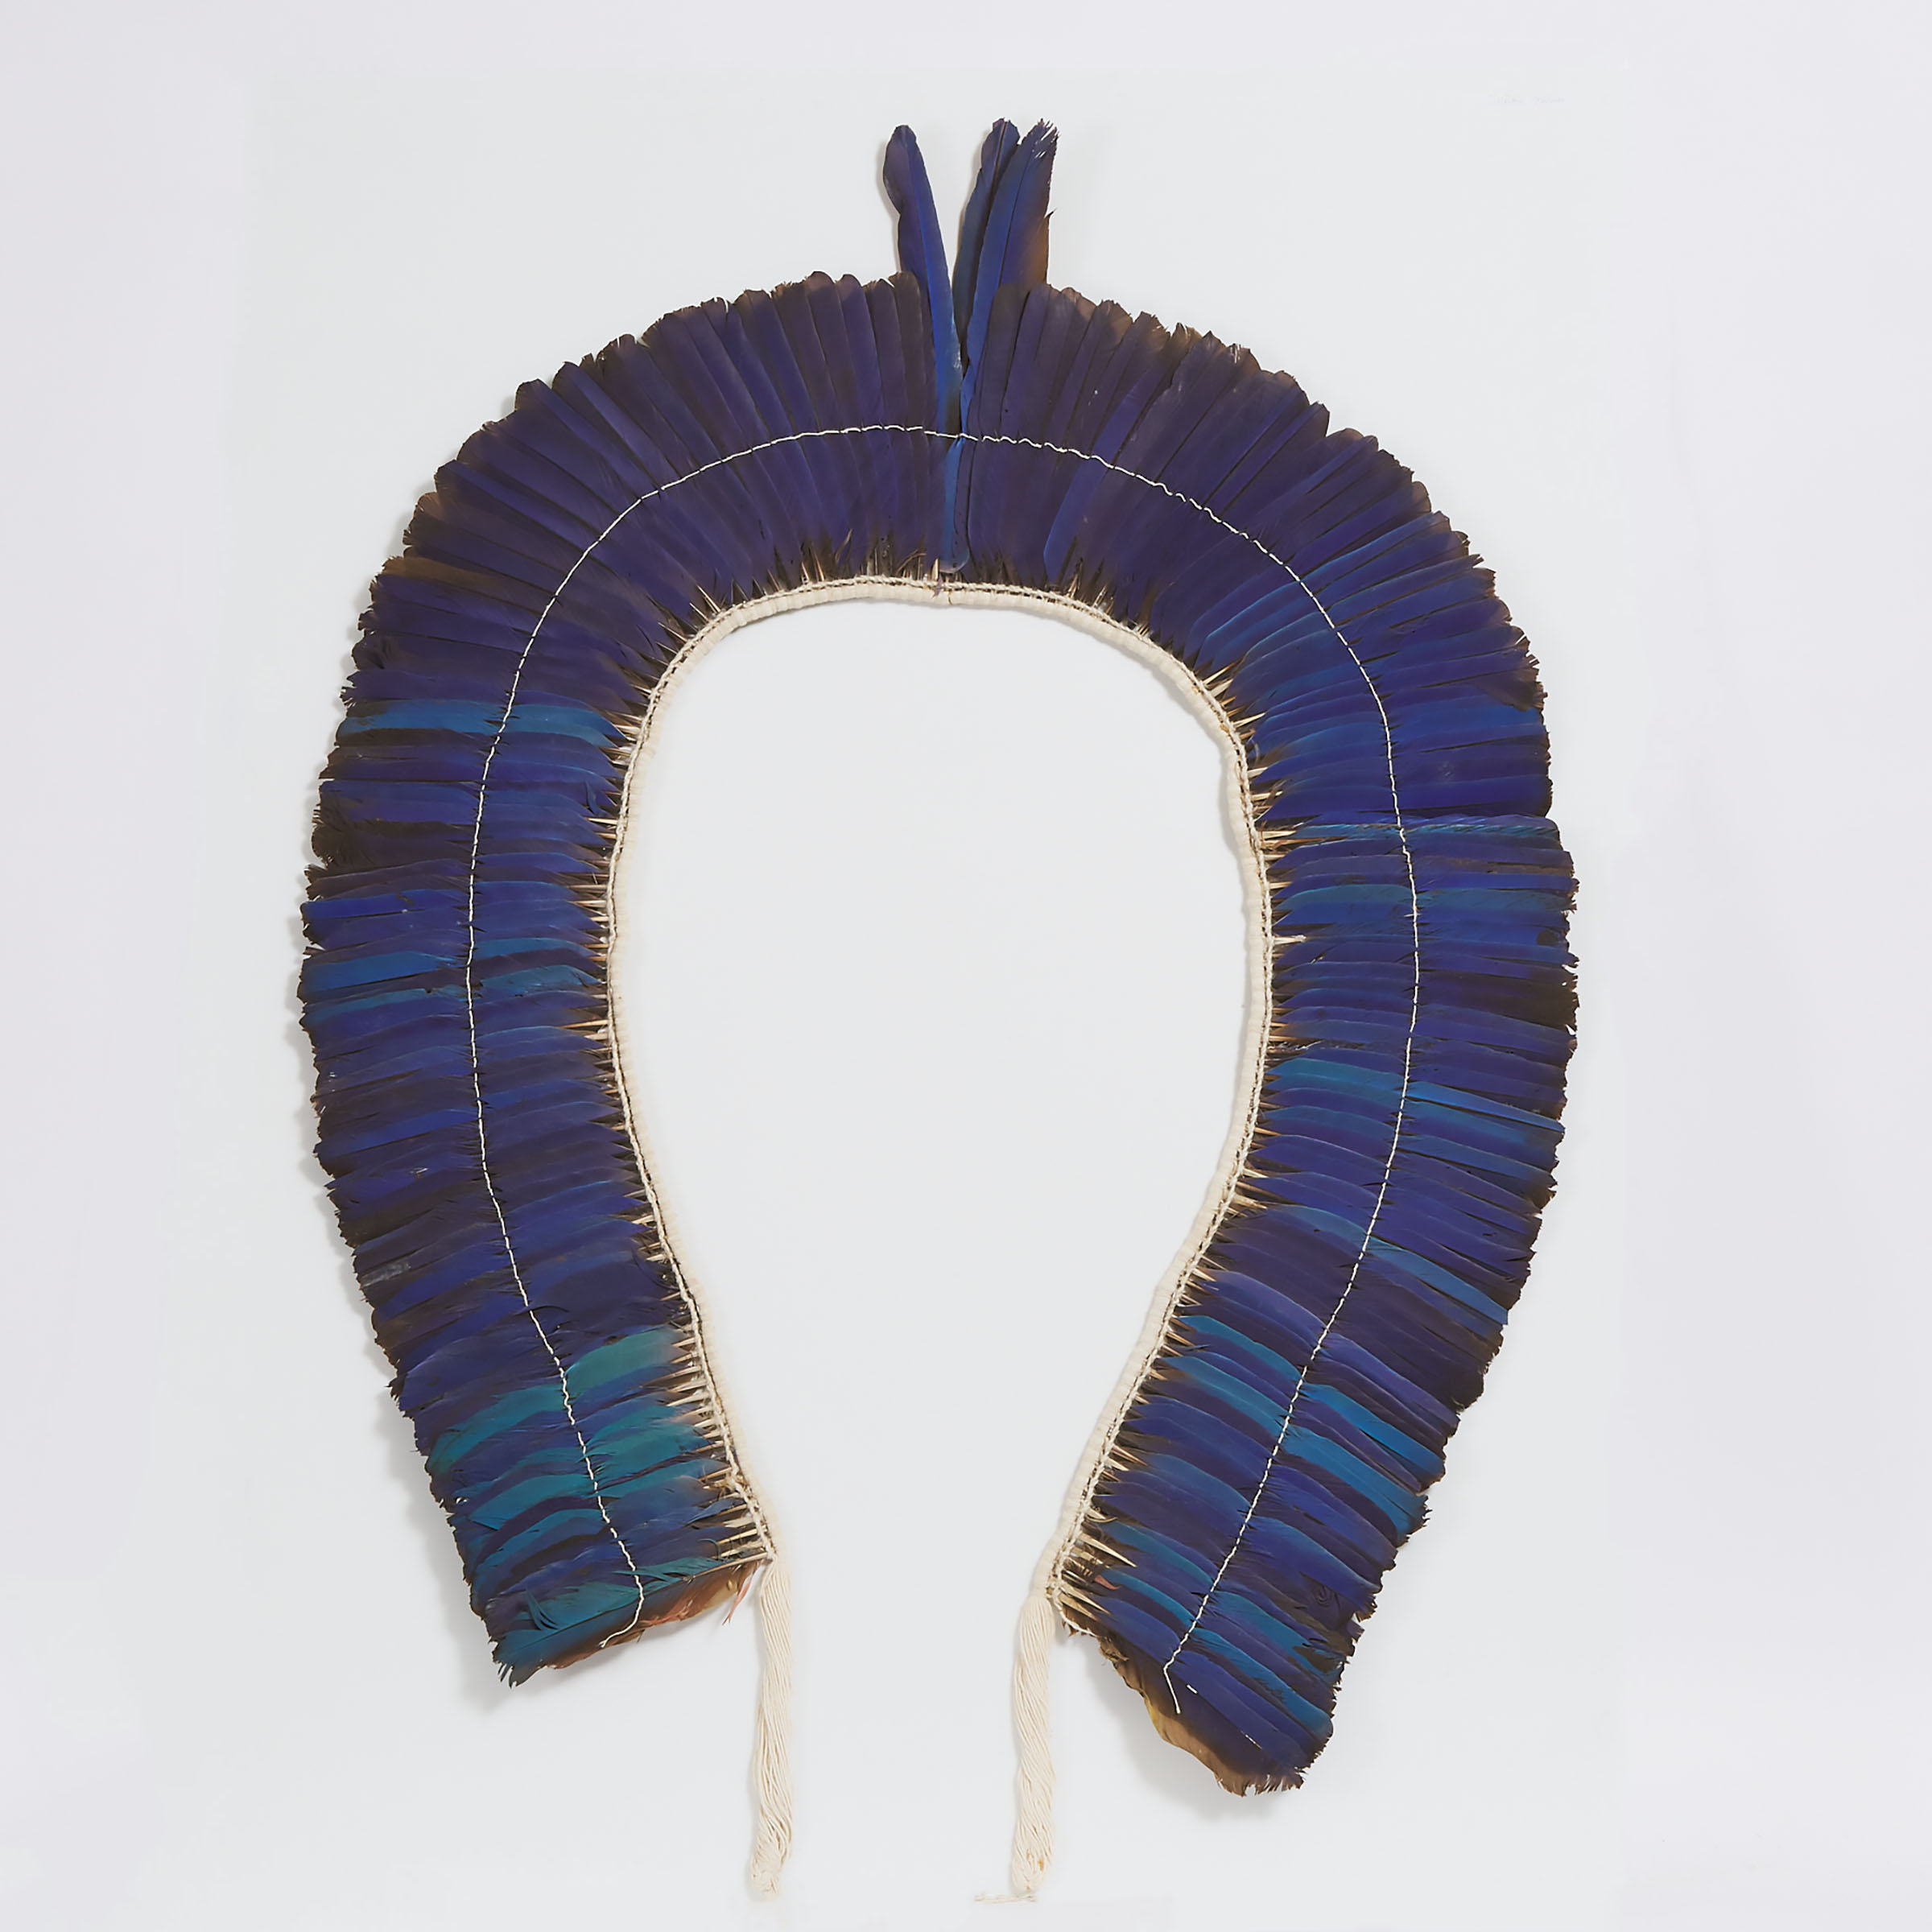 Kayapo Hyacinth Macaw Feather Headdress, Brazil, late 20th century